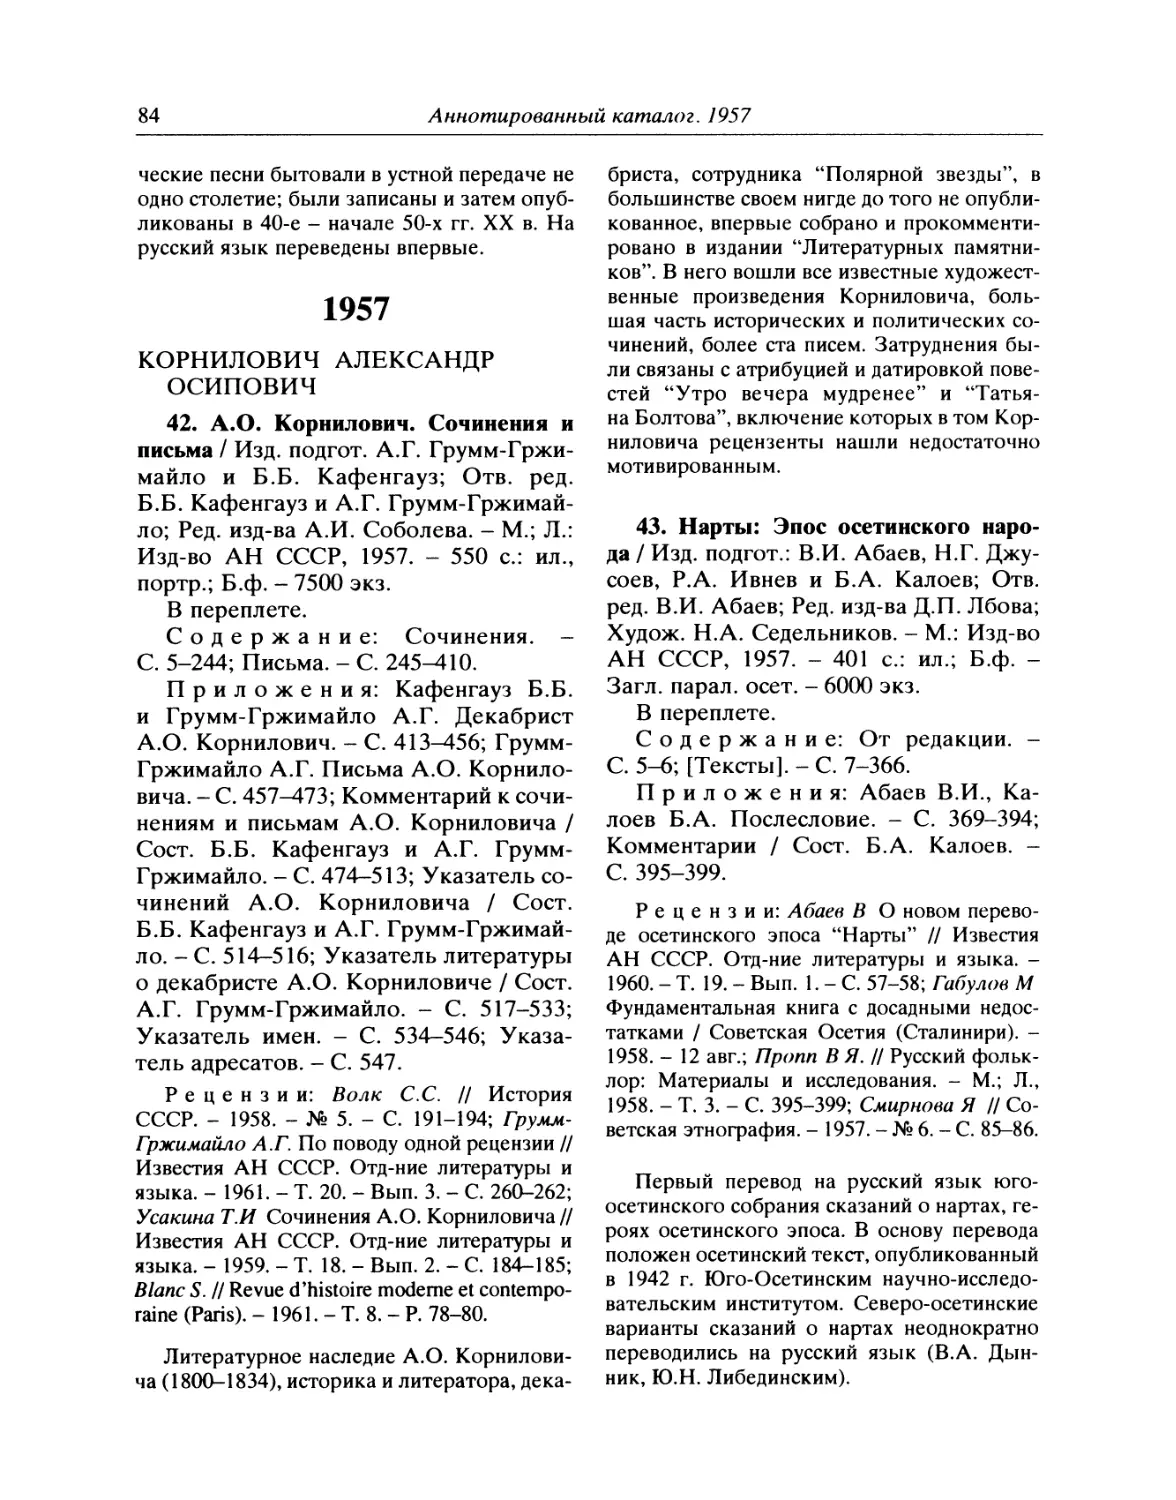 1957
43. Нарты. Эпос осетинского народа